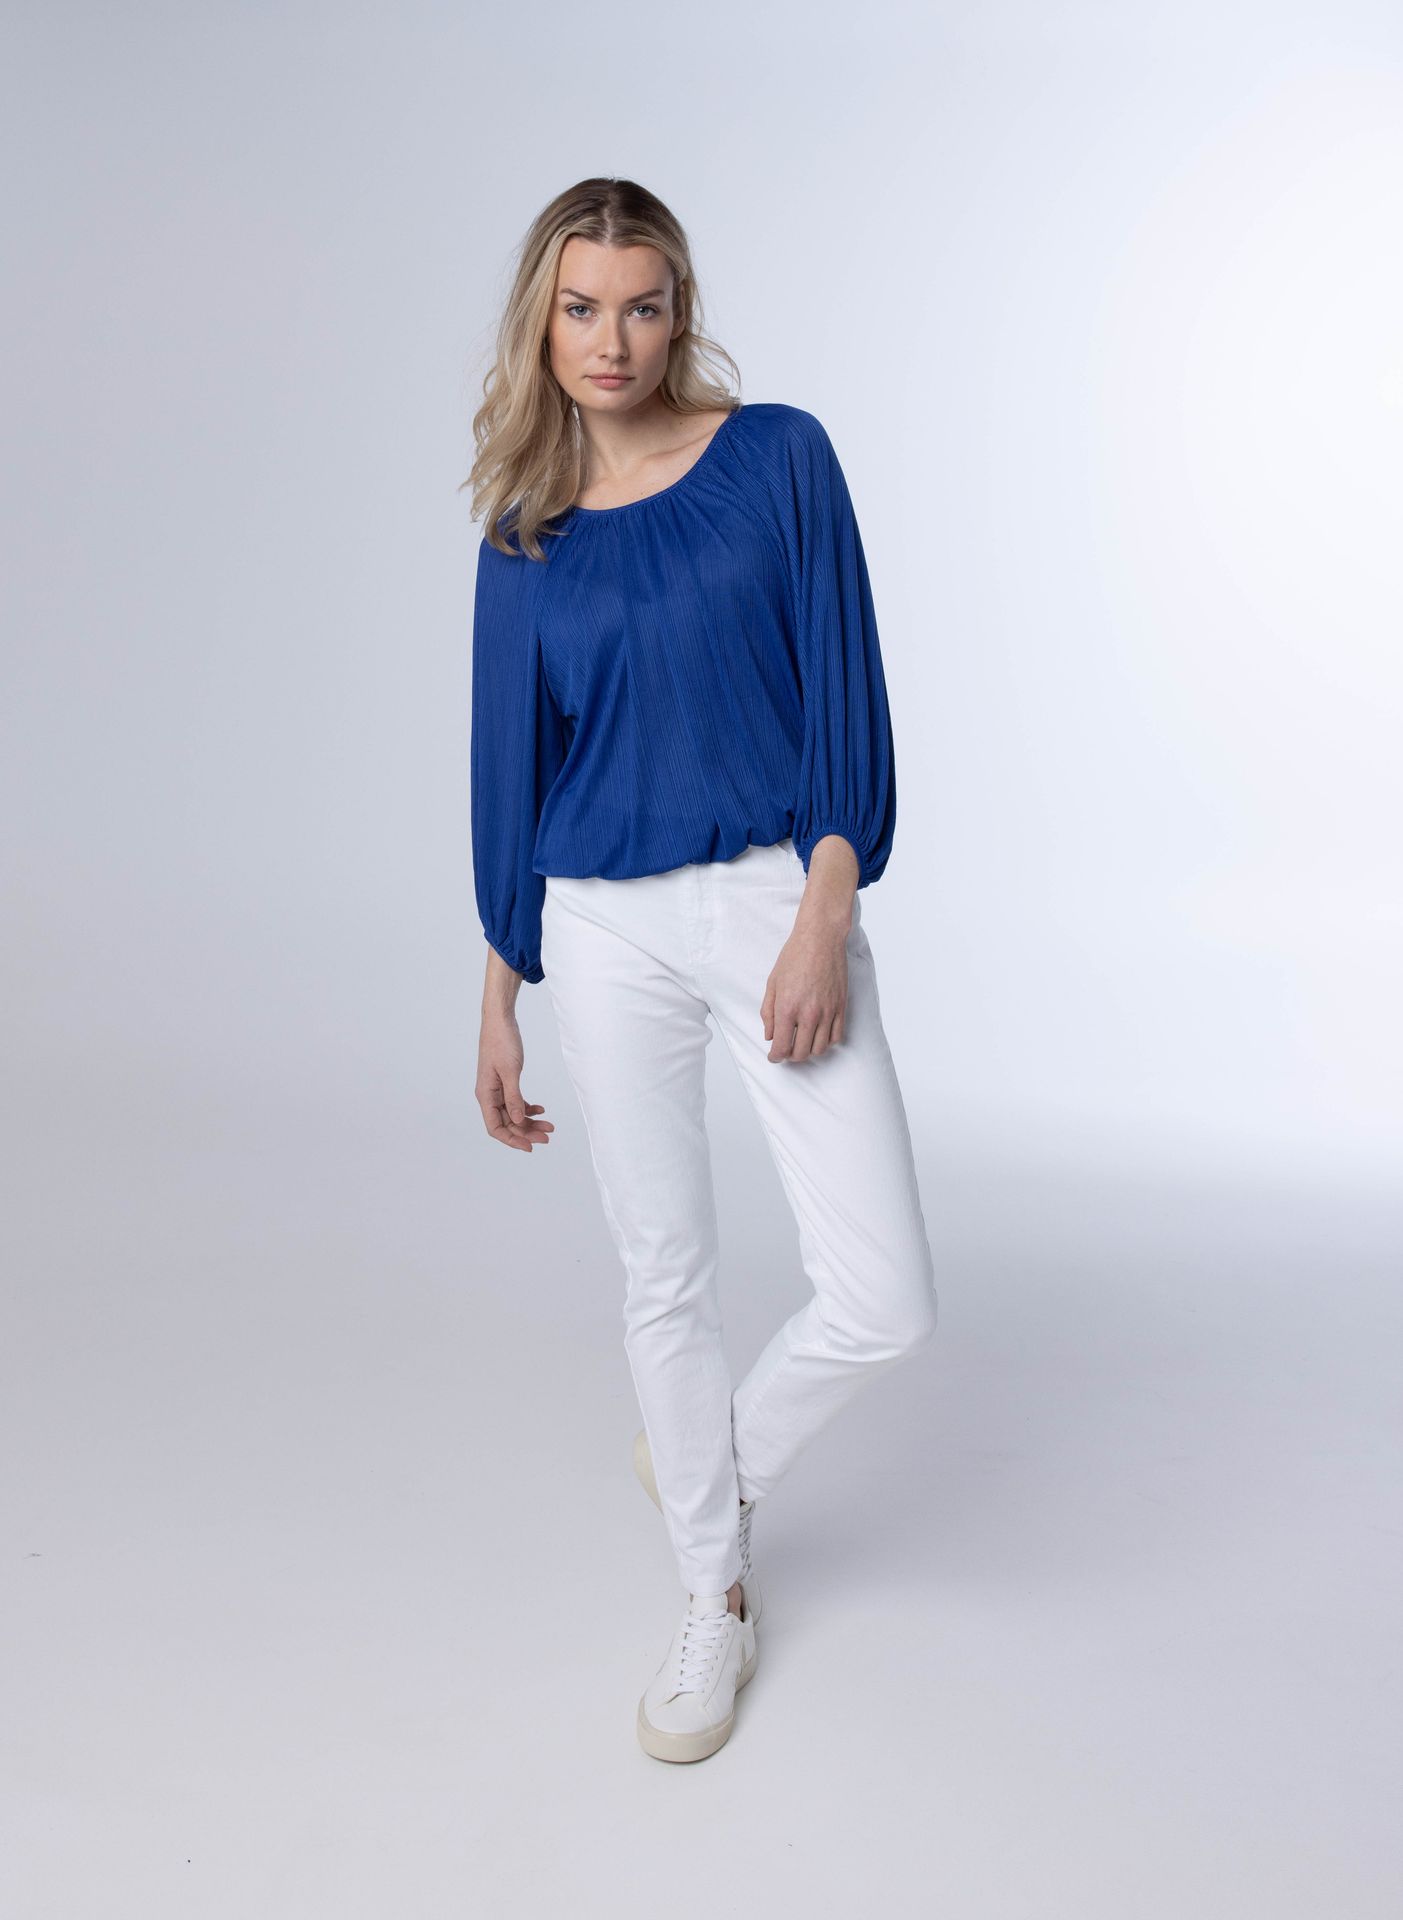 Norah Blauwe blouse met pofmouwen royal blue 213424-466